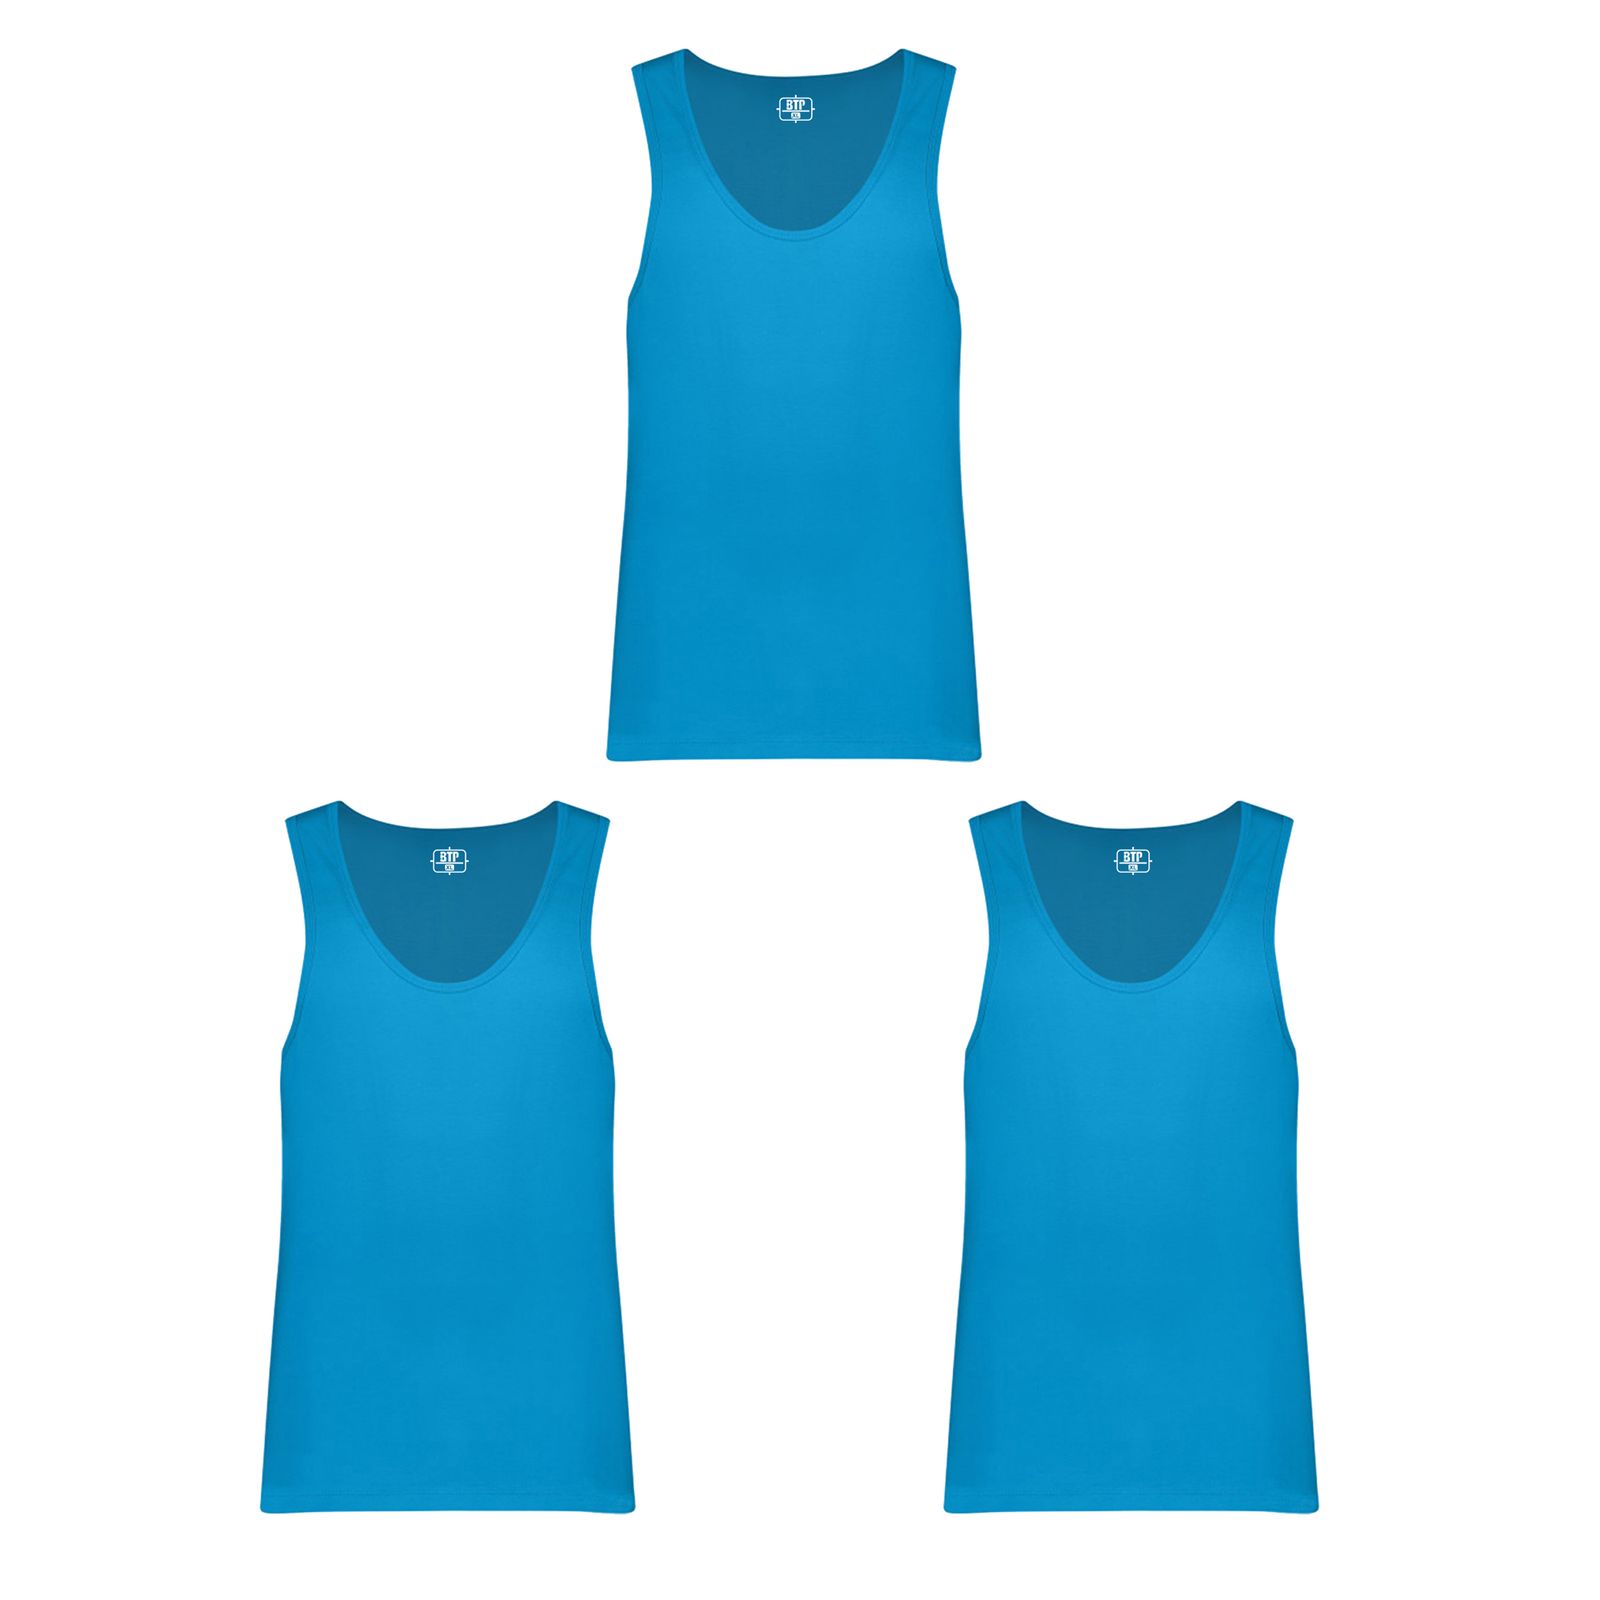 زیرپوش رکابی مردانه برهان تن پوش مدل 3-01 رنگ آبی فیروزه ای بسته 3 عددی -  - 1